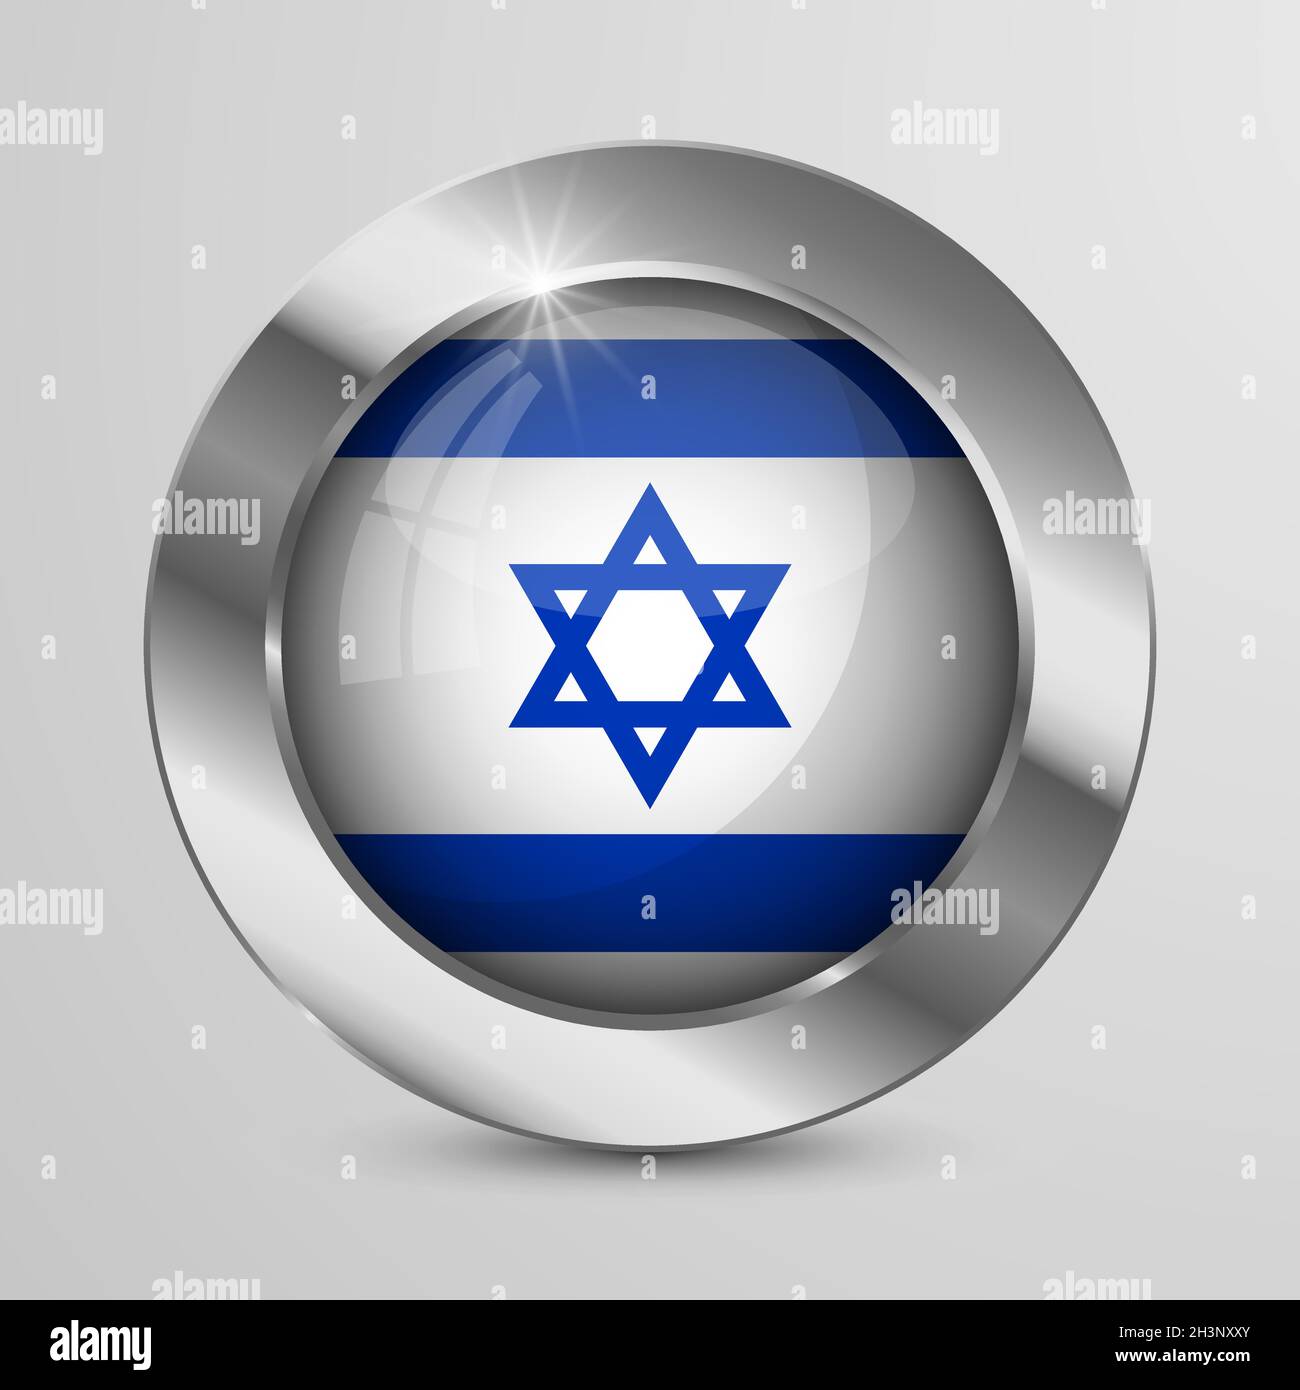 EPS10 Vector Patriotic-Knopf mit Israel-Flaggen-Farben. Ein Element der Wirkung für die Verwendung, die Sie daraus machen möchten. Stock Vektor